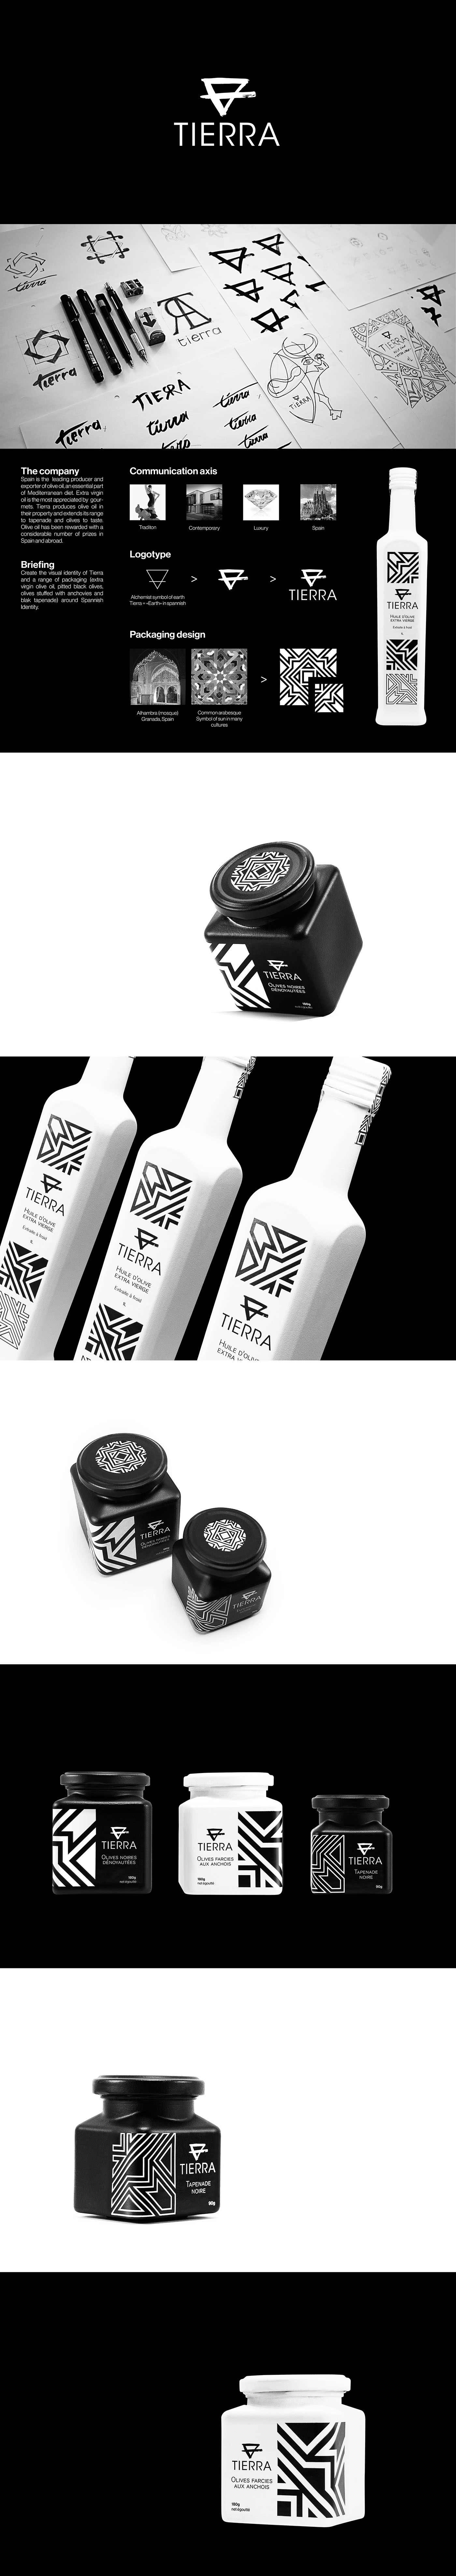 tierra olive oil luxury spain head Packaging visual identity design